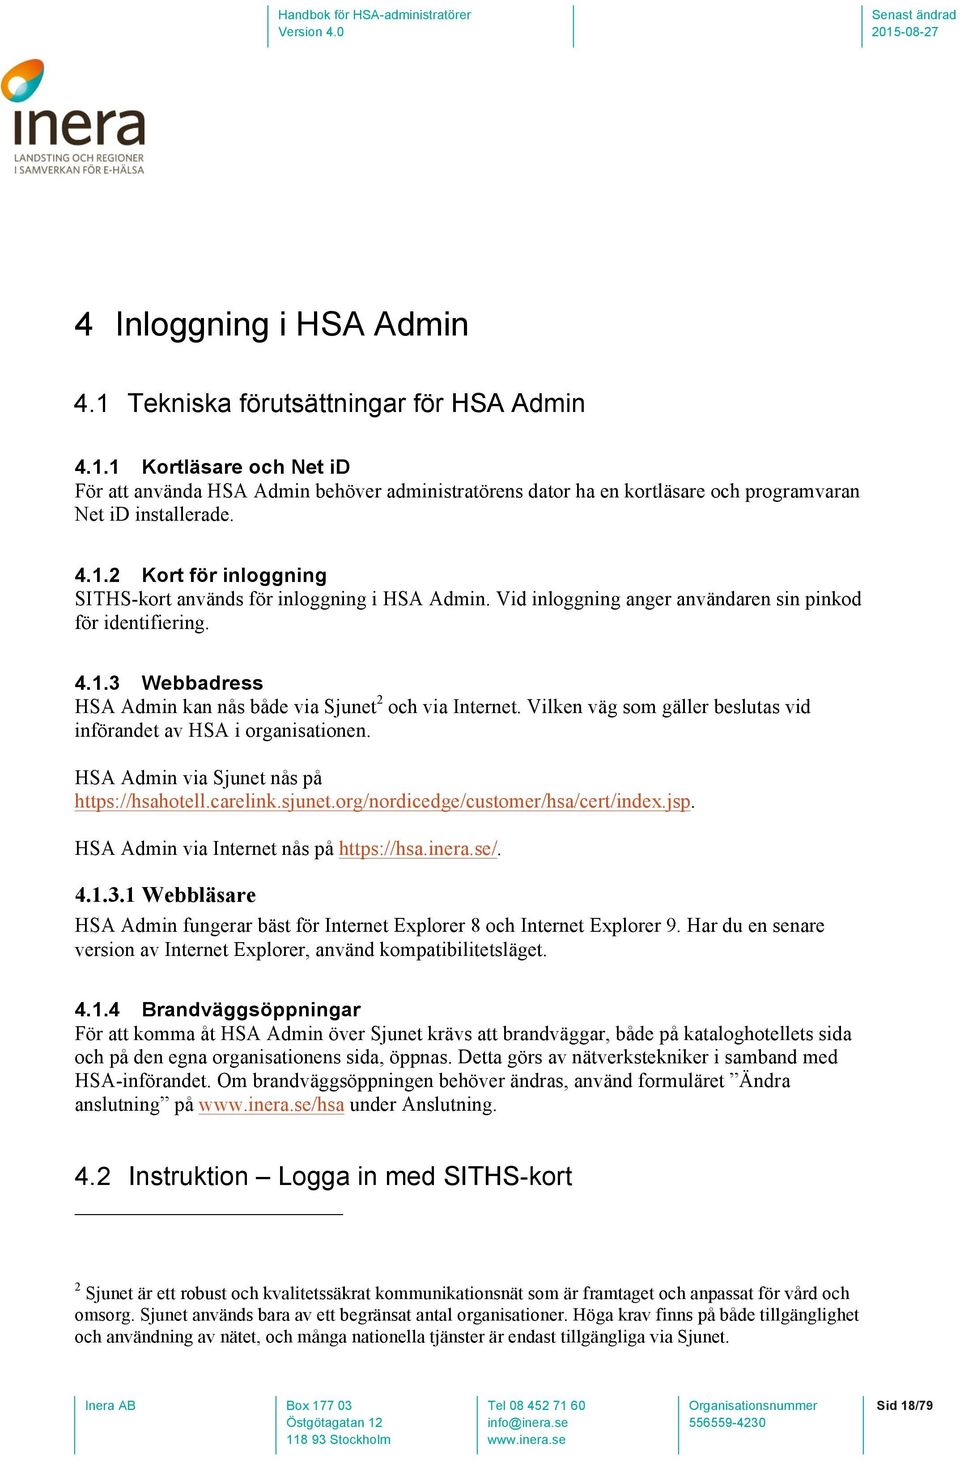 Vilken väg som gäller beslutas vid införandet av HSA i organisationen. HSA Admin via Sjunet nås på https://hsahotell.carelink.sjunet.org/nordicedge/customer/hsa/cert/index.jsp.